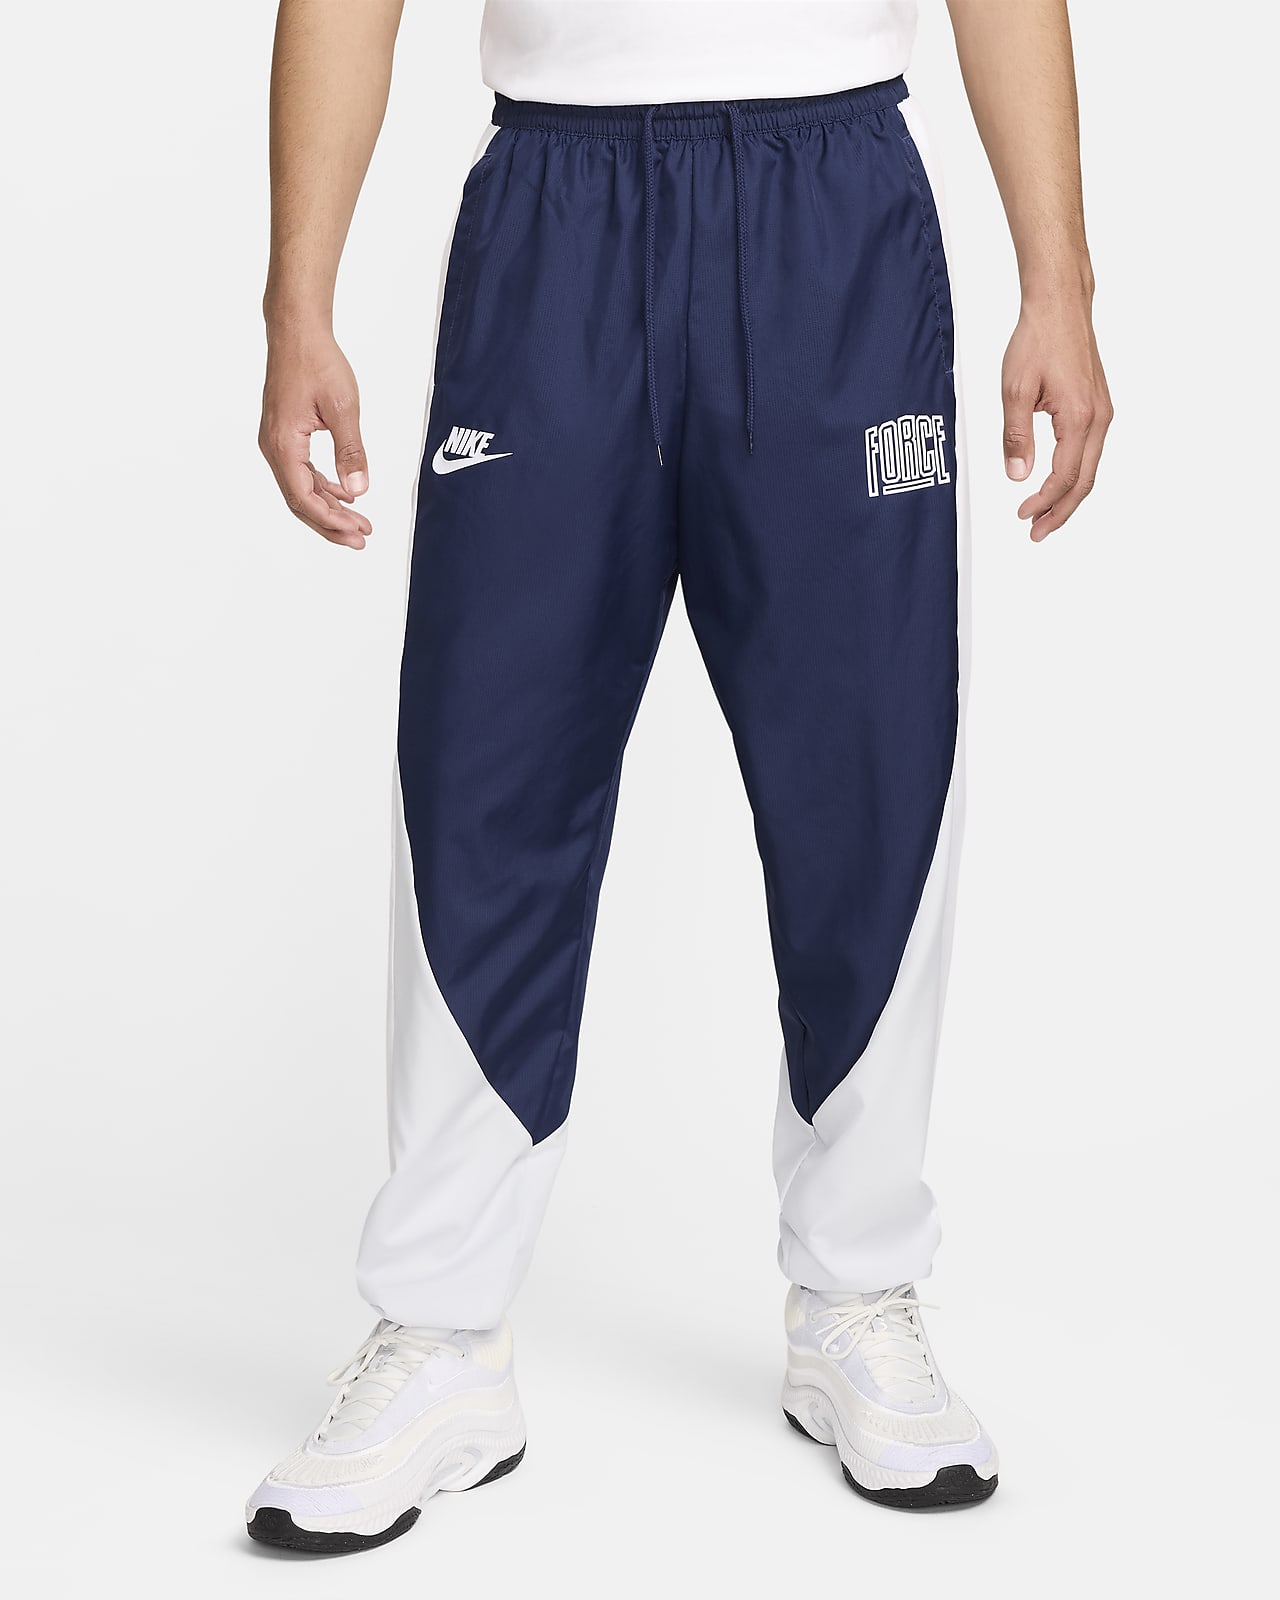 Pánské basketbalové kalhoty Nike Starting 5